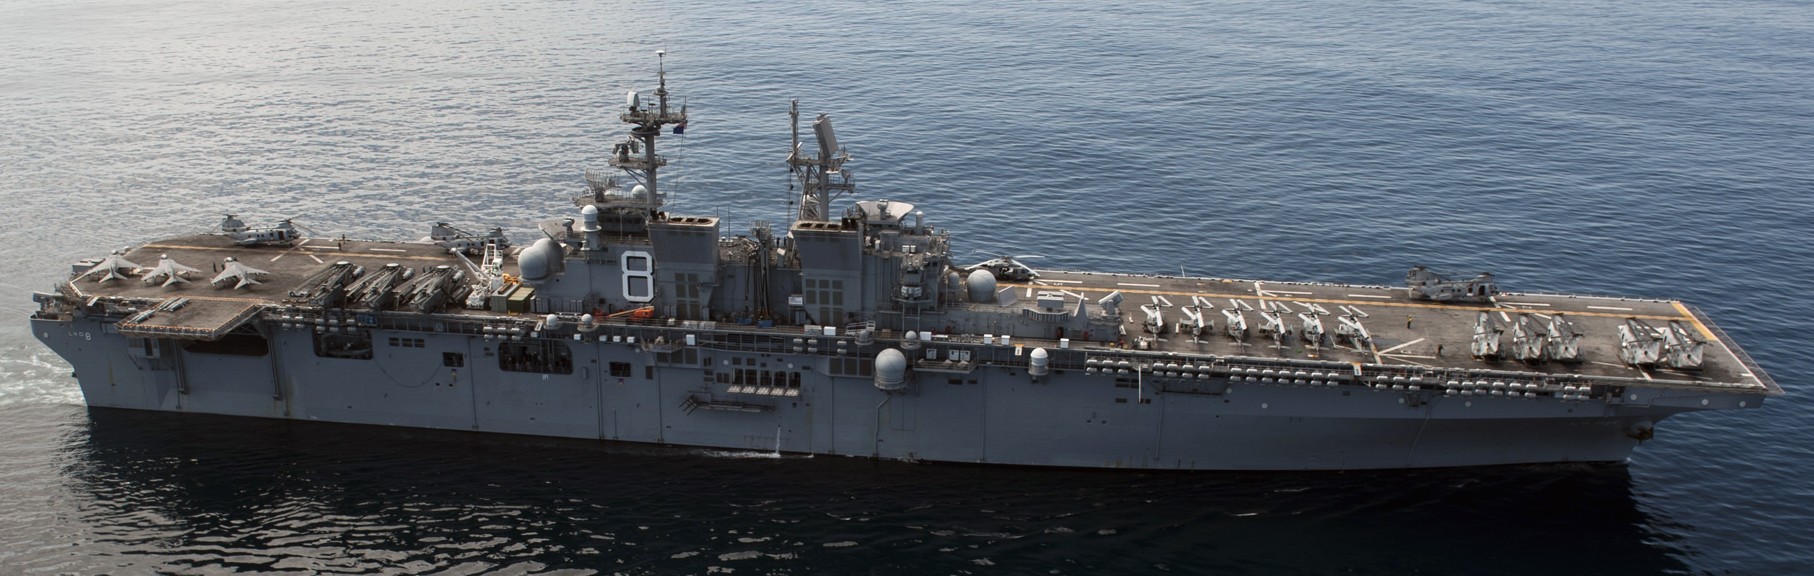 lhd-8 uss makin island amphibious assault ship landing helicopter dock us navy hmm-268 marines 43